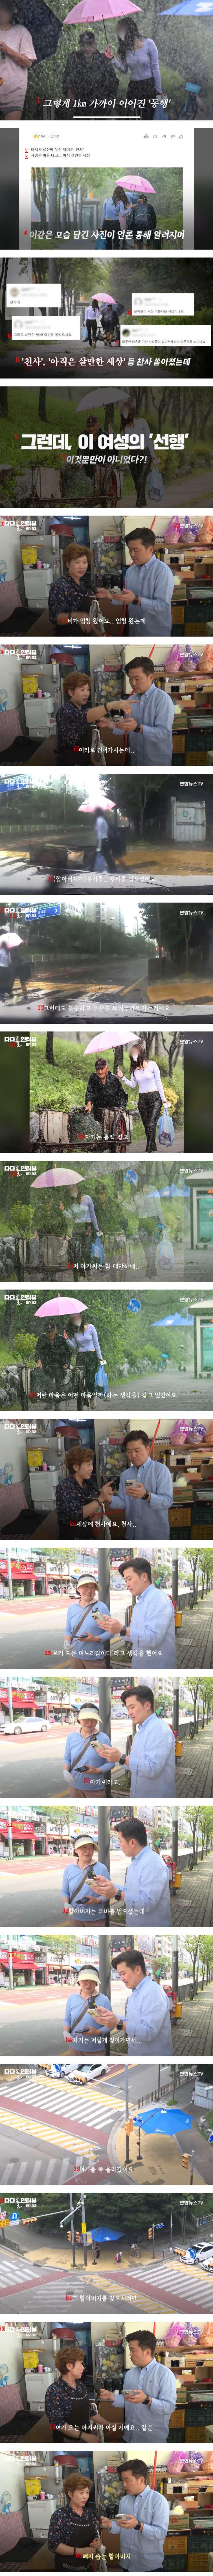 폐지 줍는 어르신에게 우산 씌워준 여성..의외의 사실